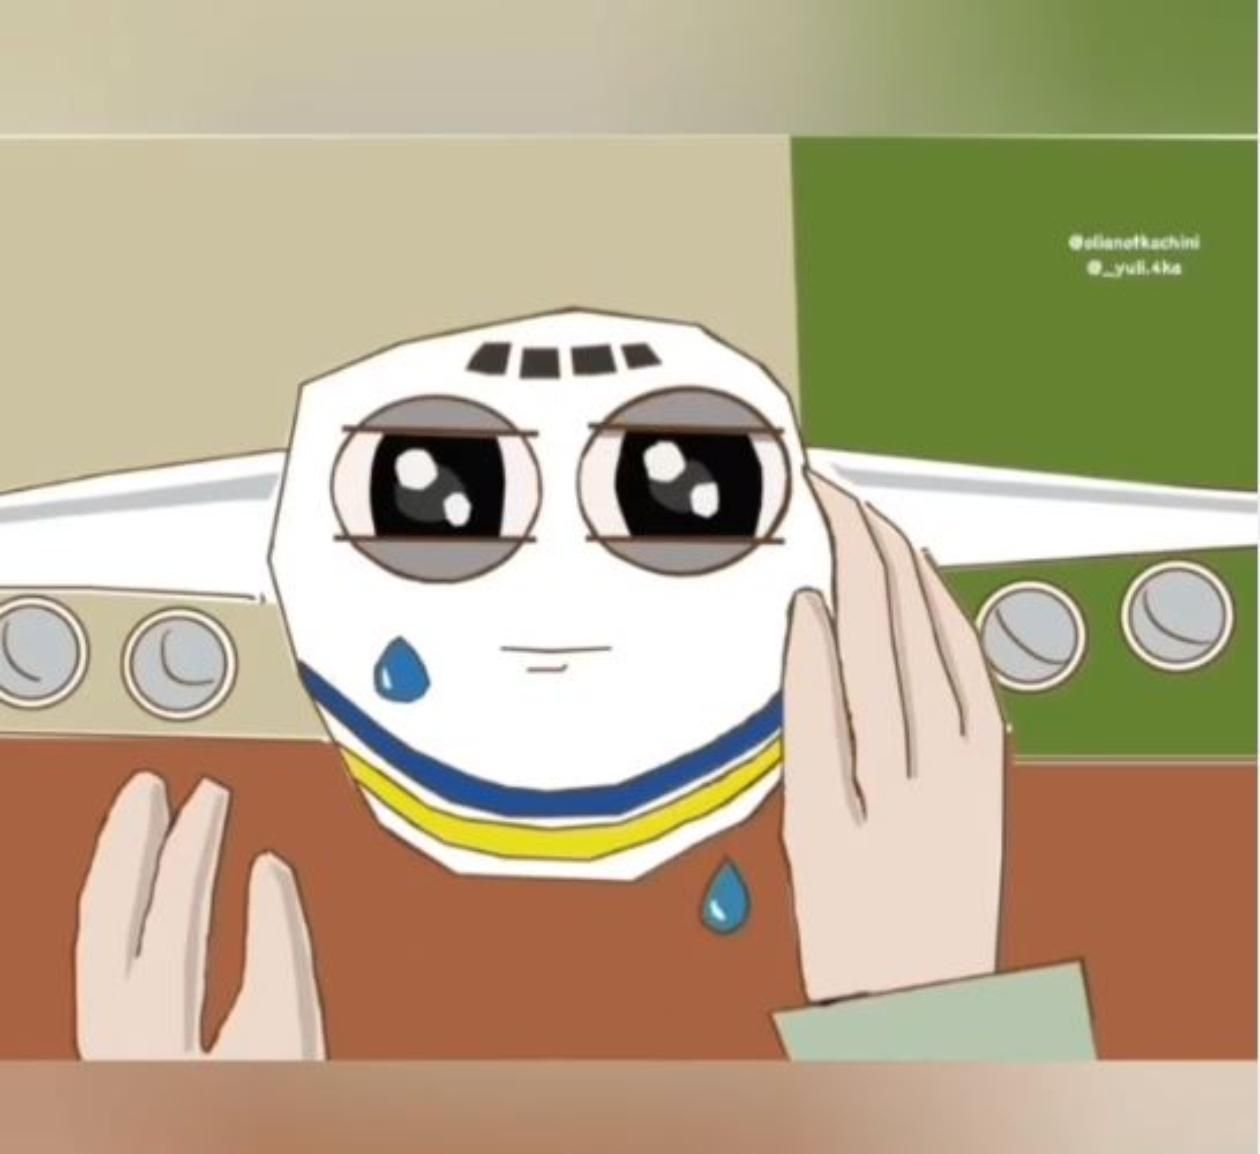 "Которая никогда не погаснет": украинки создали мультфильм о самом большом в мире самолете "Мрия - Кино